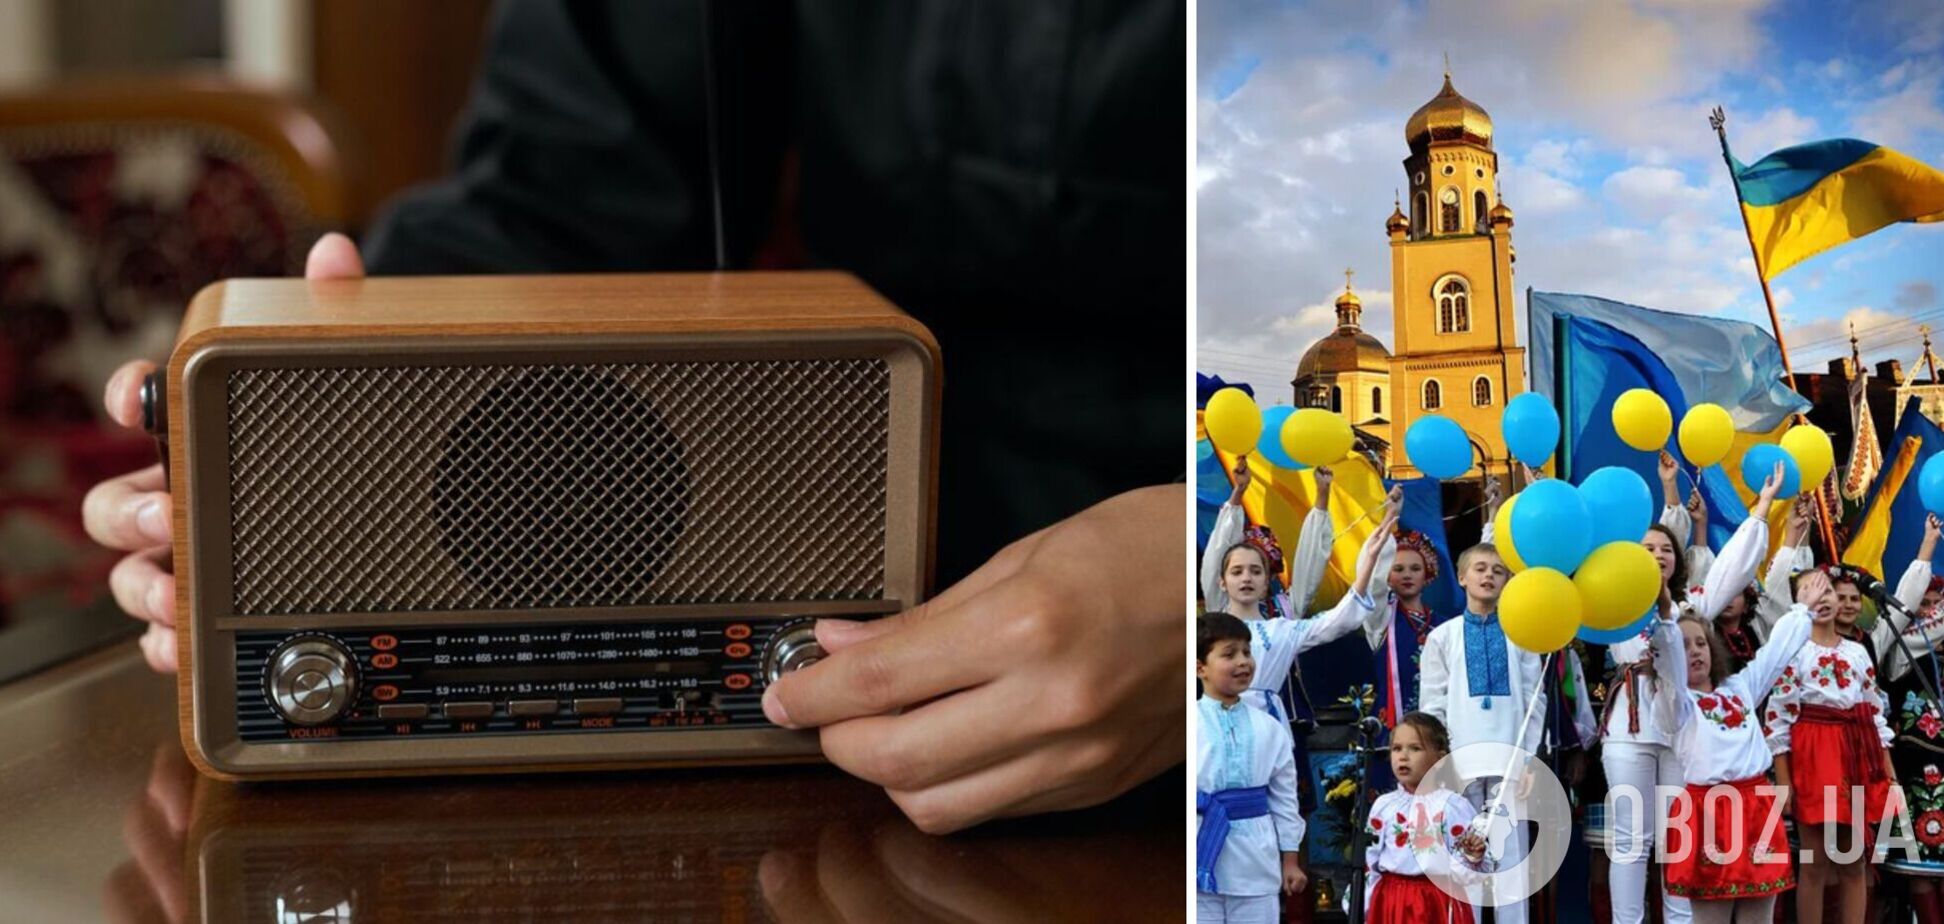 На радио в Москве по кругу крутили гимн Украины, 'Ой у лузі червона калина' и песню 'Ногу свело' о войне